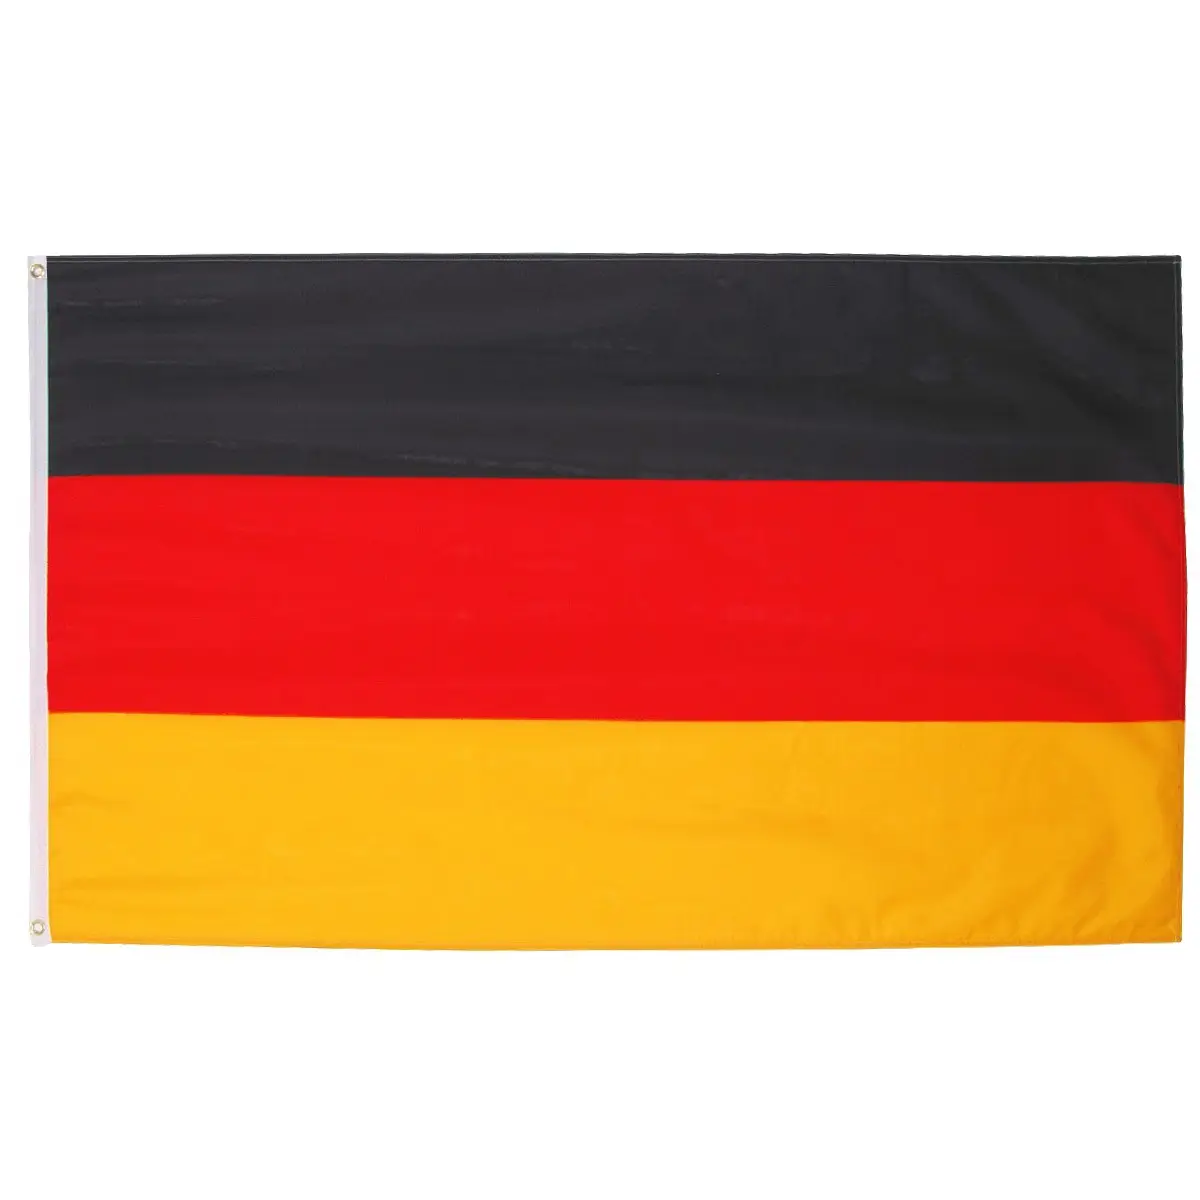 स्टॉक वर्ल्ड जर्मनी में उच्च गुणवत्ता वाले कस्टम पॉलिएस्टर जर्मन झंडों का 3x5 फीट देश ध्वज